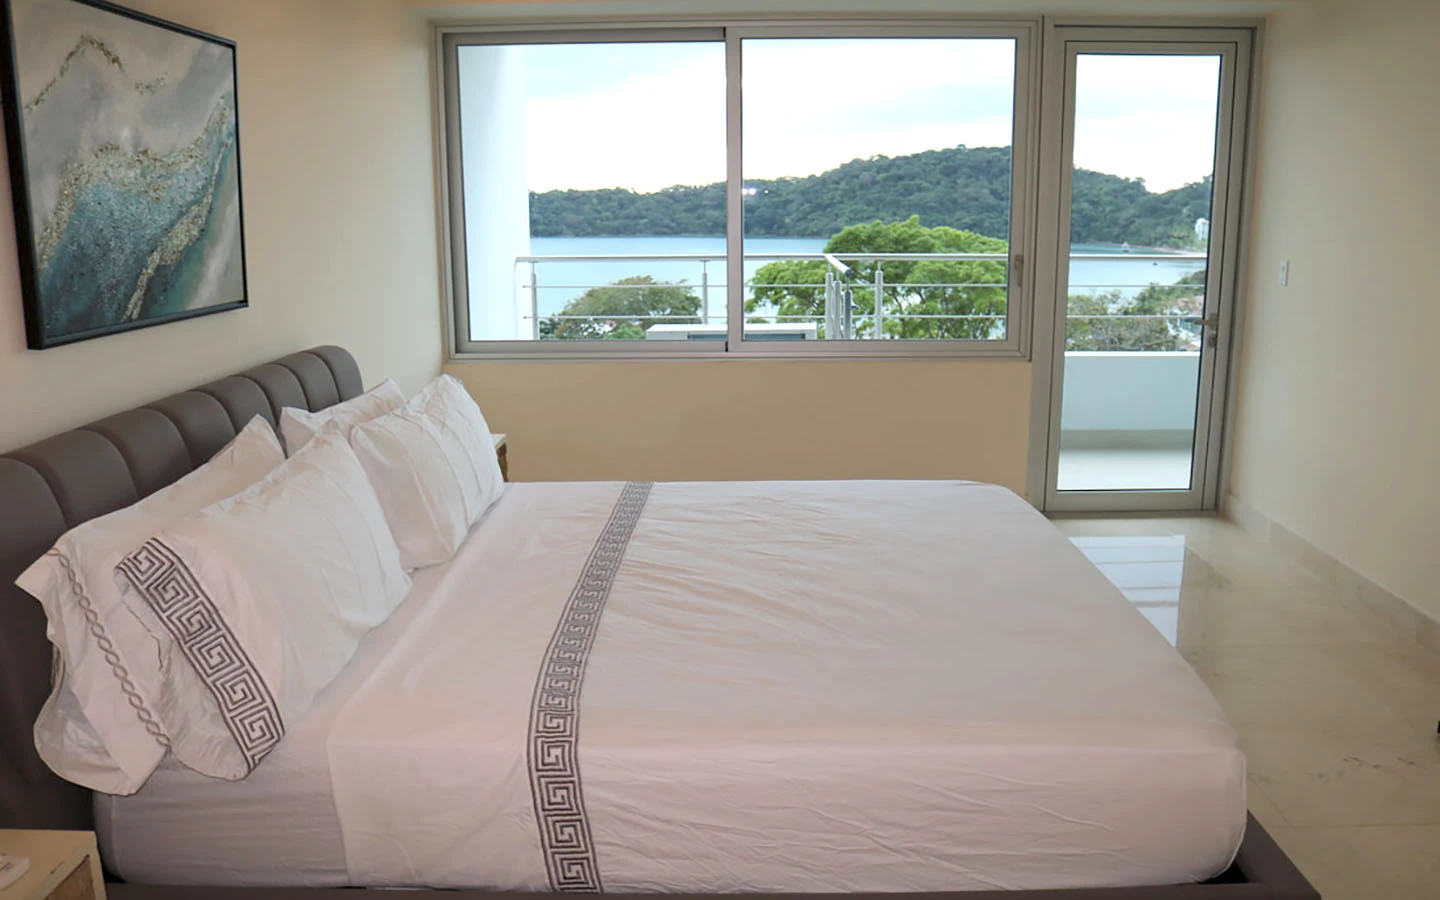 casa bonita panama master bedroom ocean view